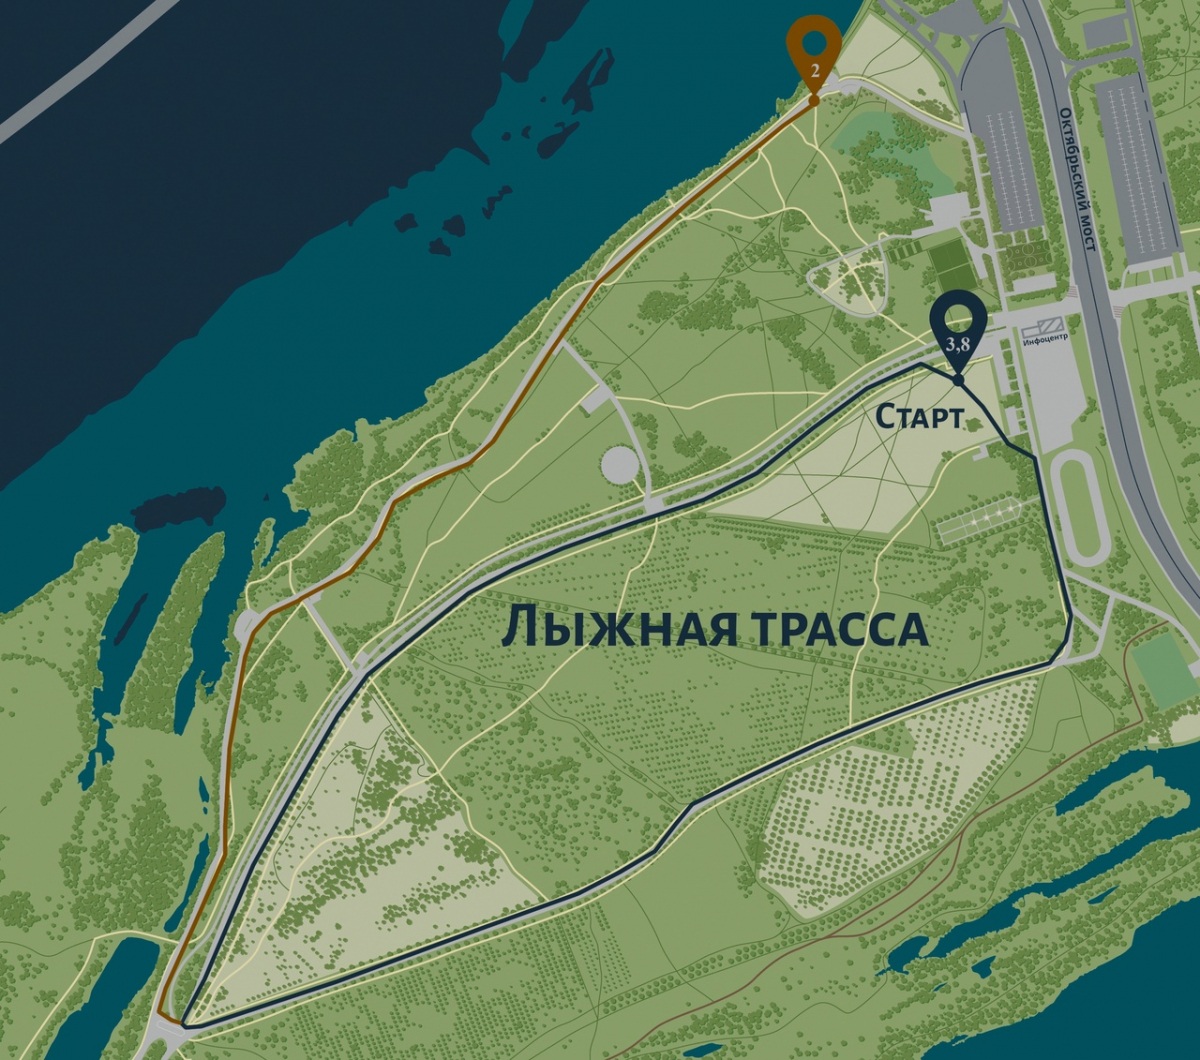 В Красноярске на территории «Татышев-парка» готова лыжная трасса протяженностью 3,8 километра